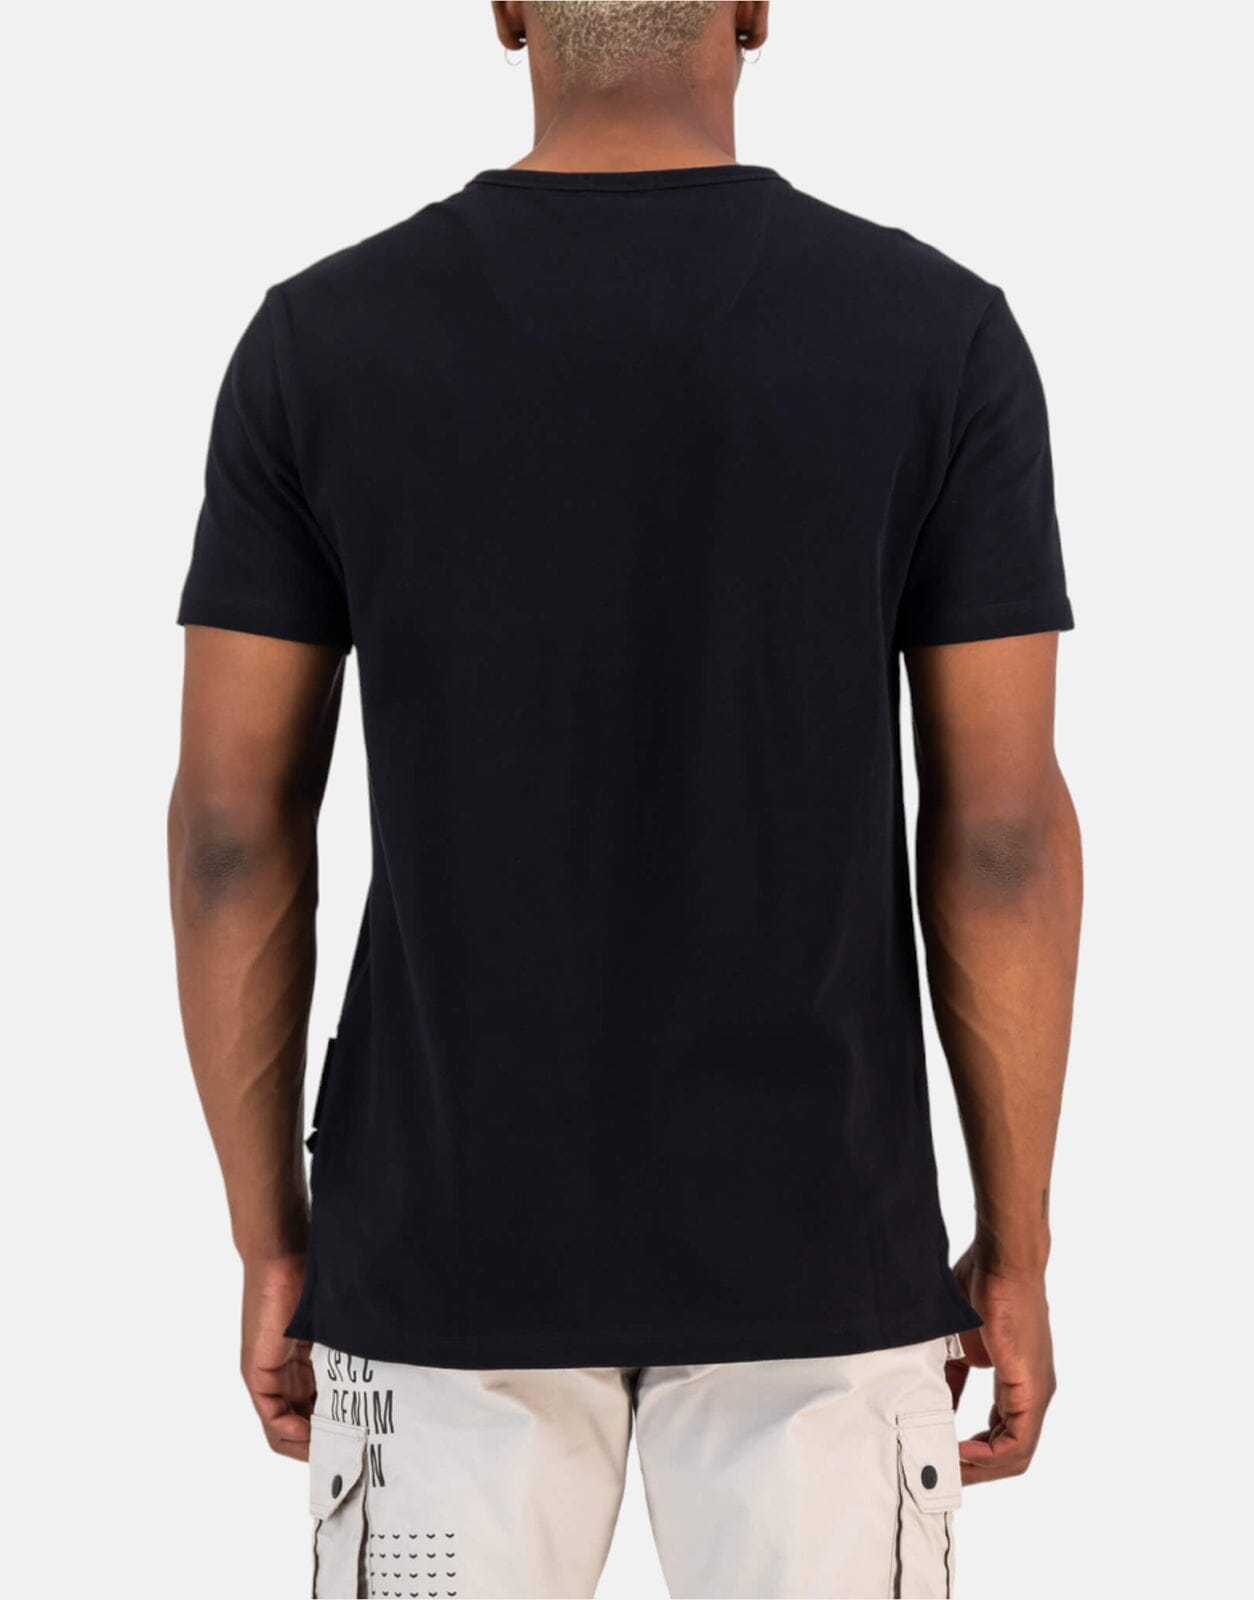 SPCC Suske Black T-Shirt - Subwear